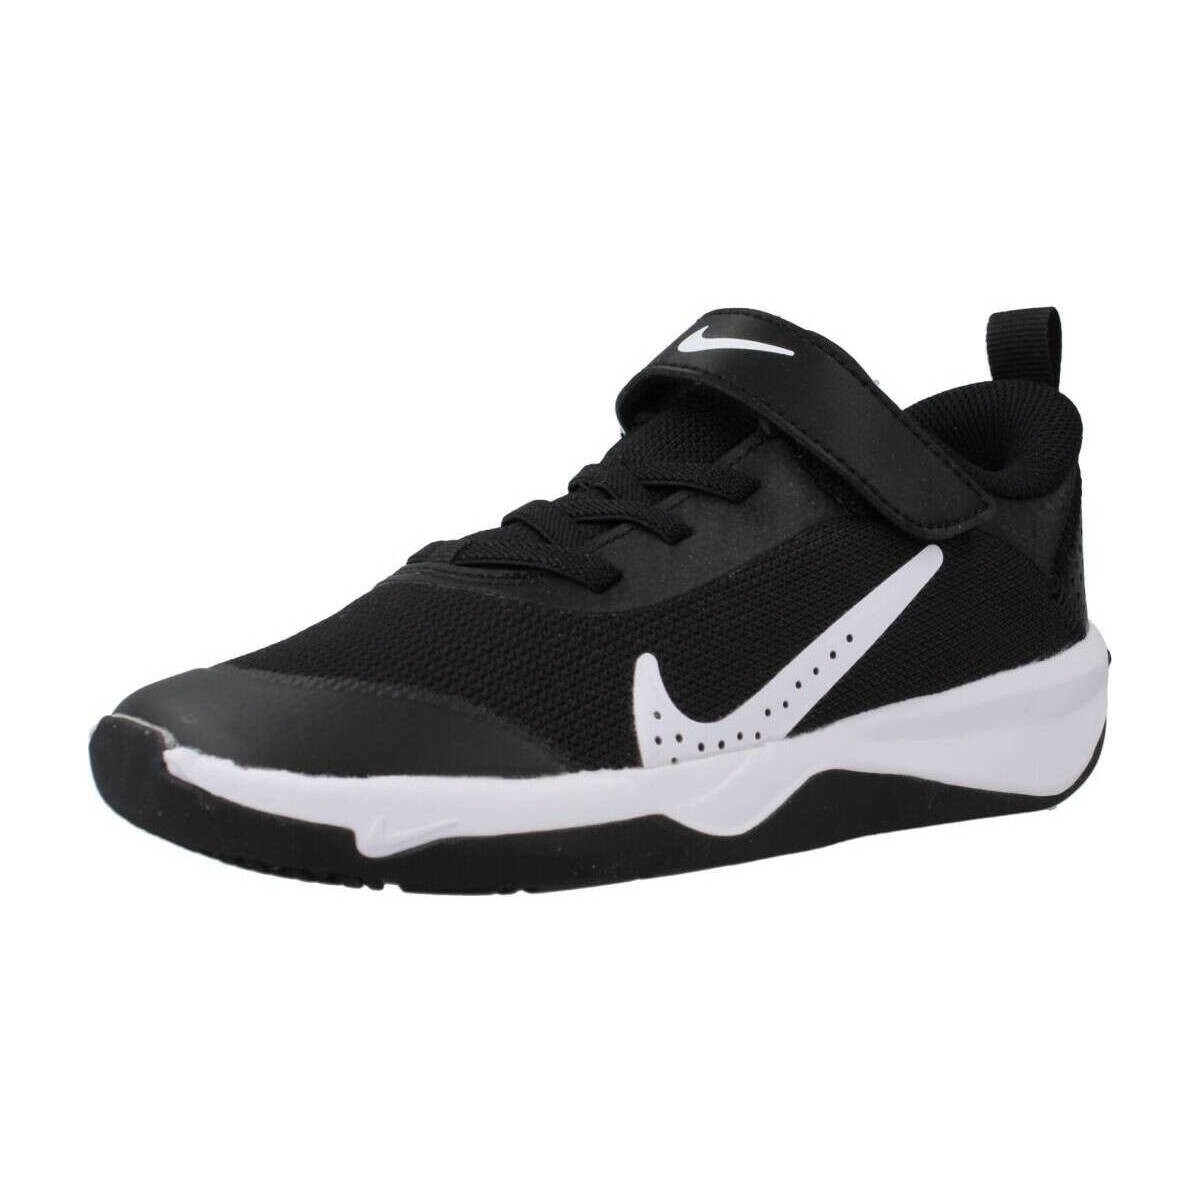 Παπούτσια Αγόρι Χαμηλά Sneakers Nike OMNI LITTLE KIDS' SHOES Black